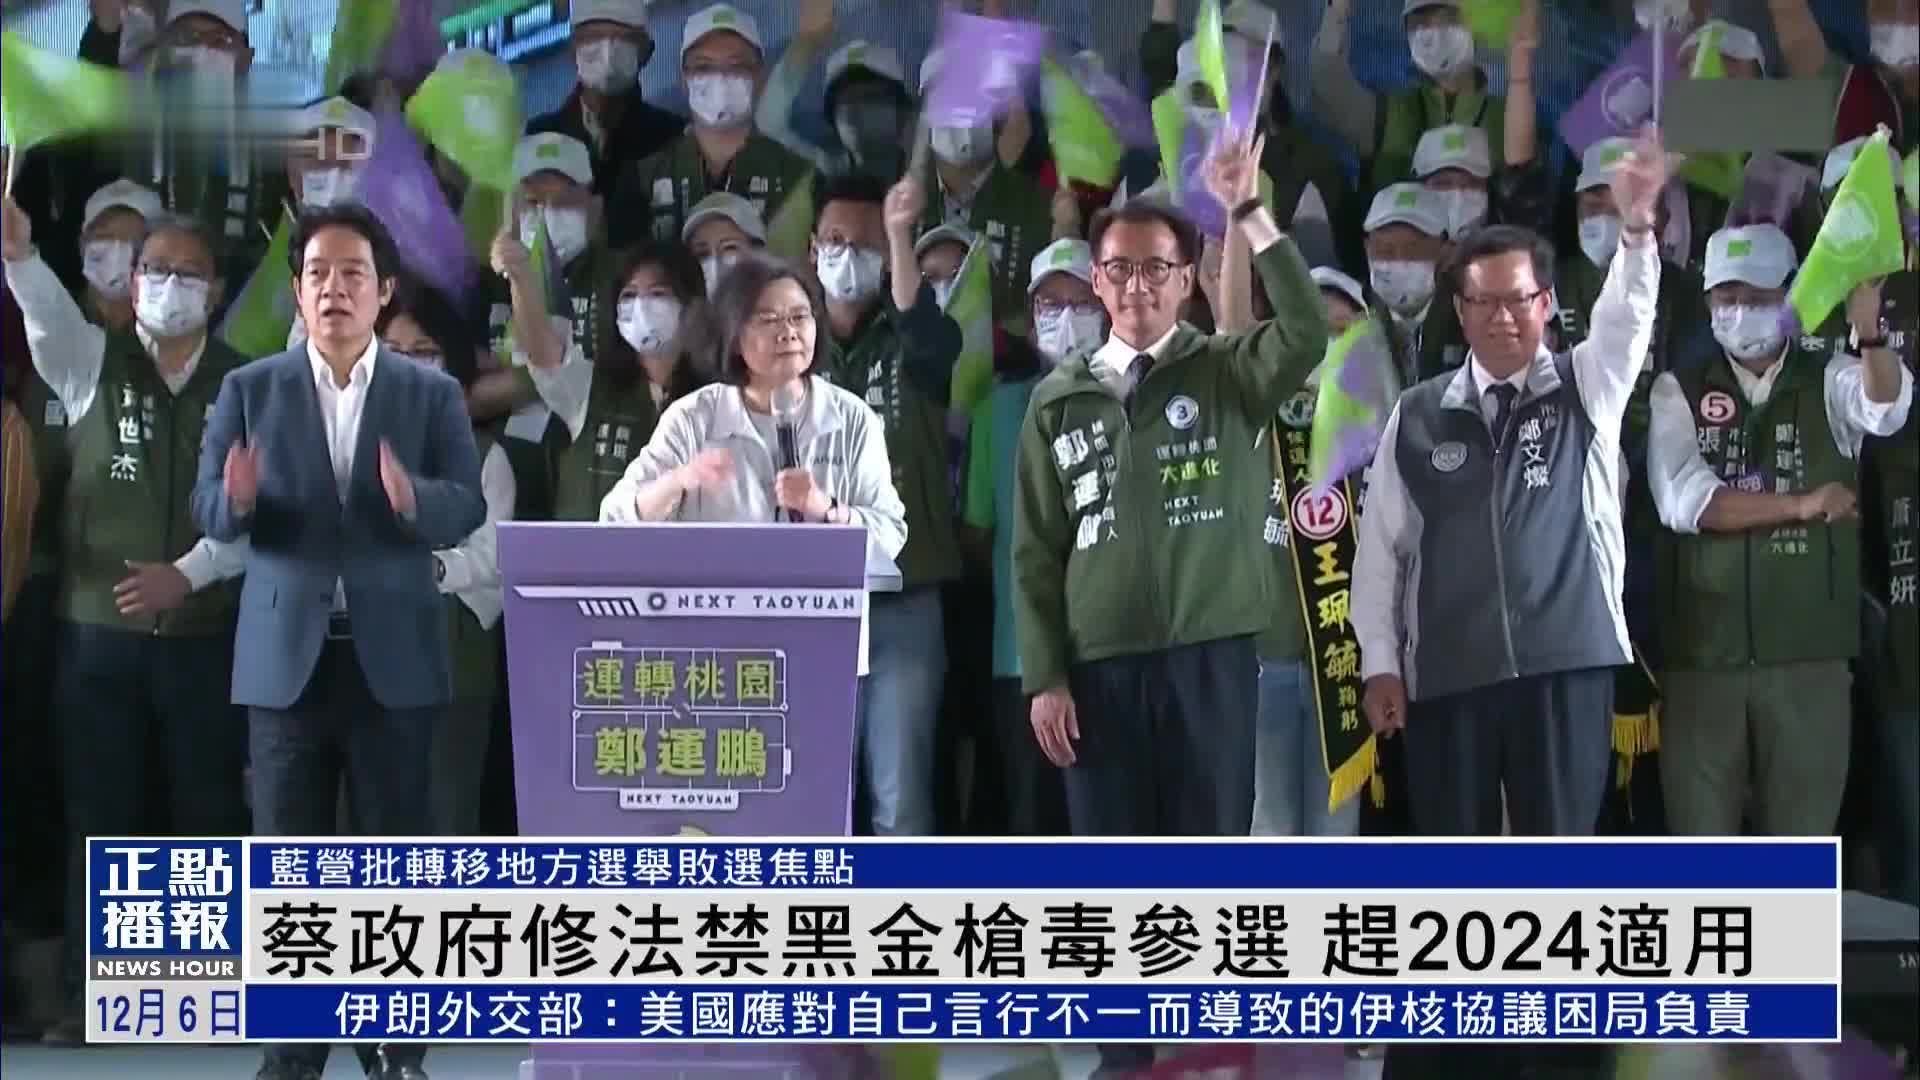 台湾2024大选民调 侯友宜成国民党竞逐大位黑马_凤凰网视频_凤凰网